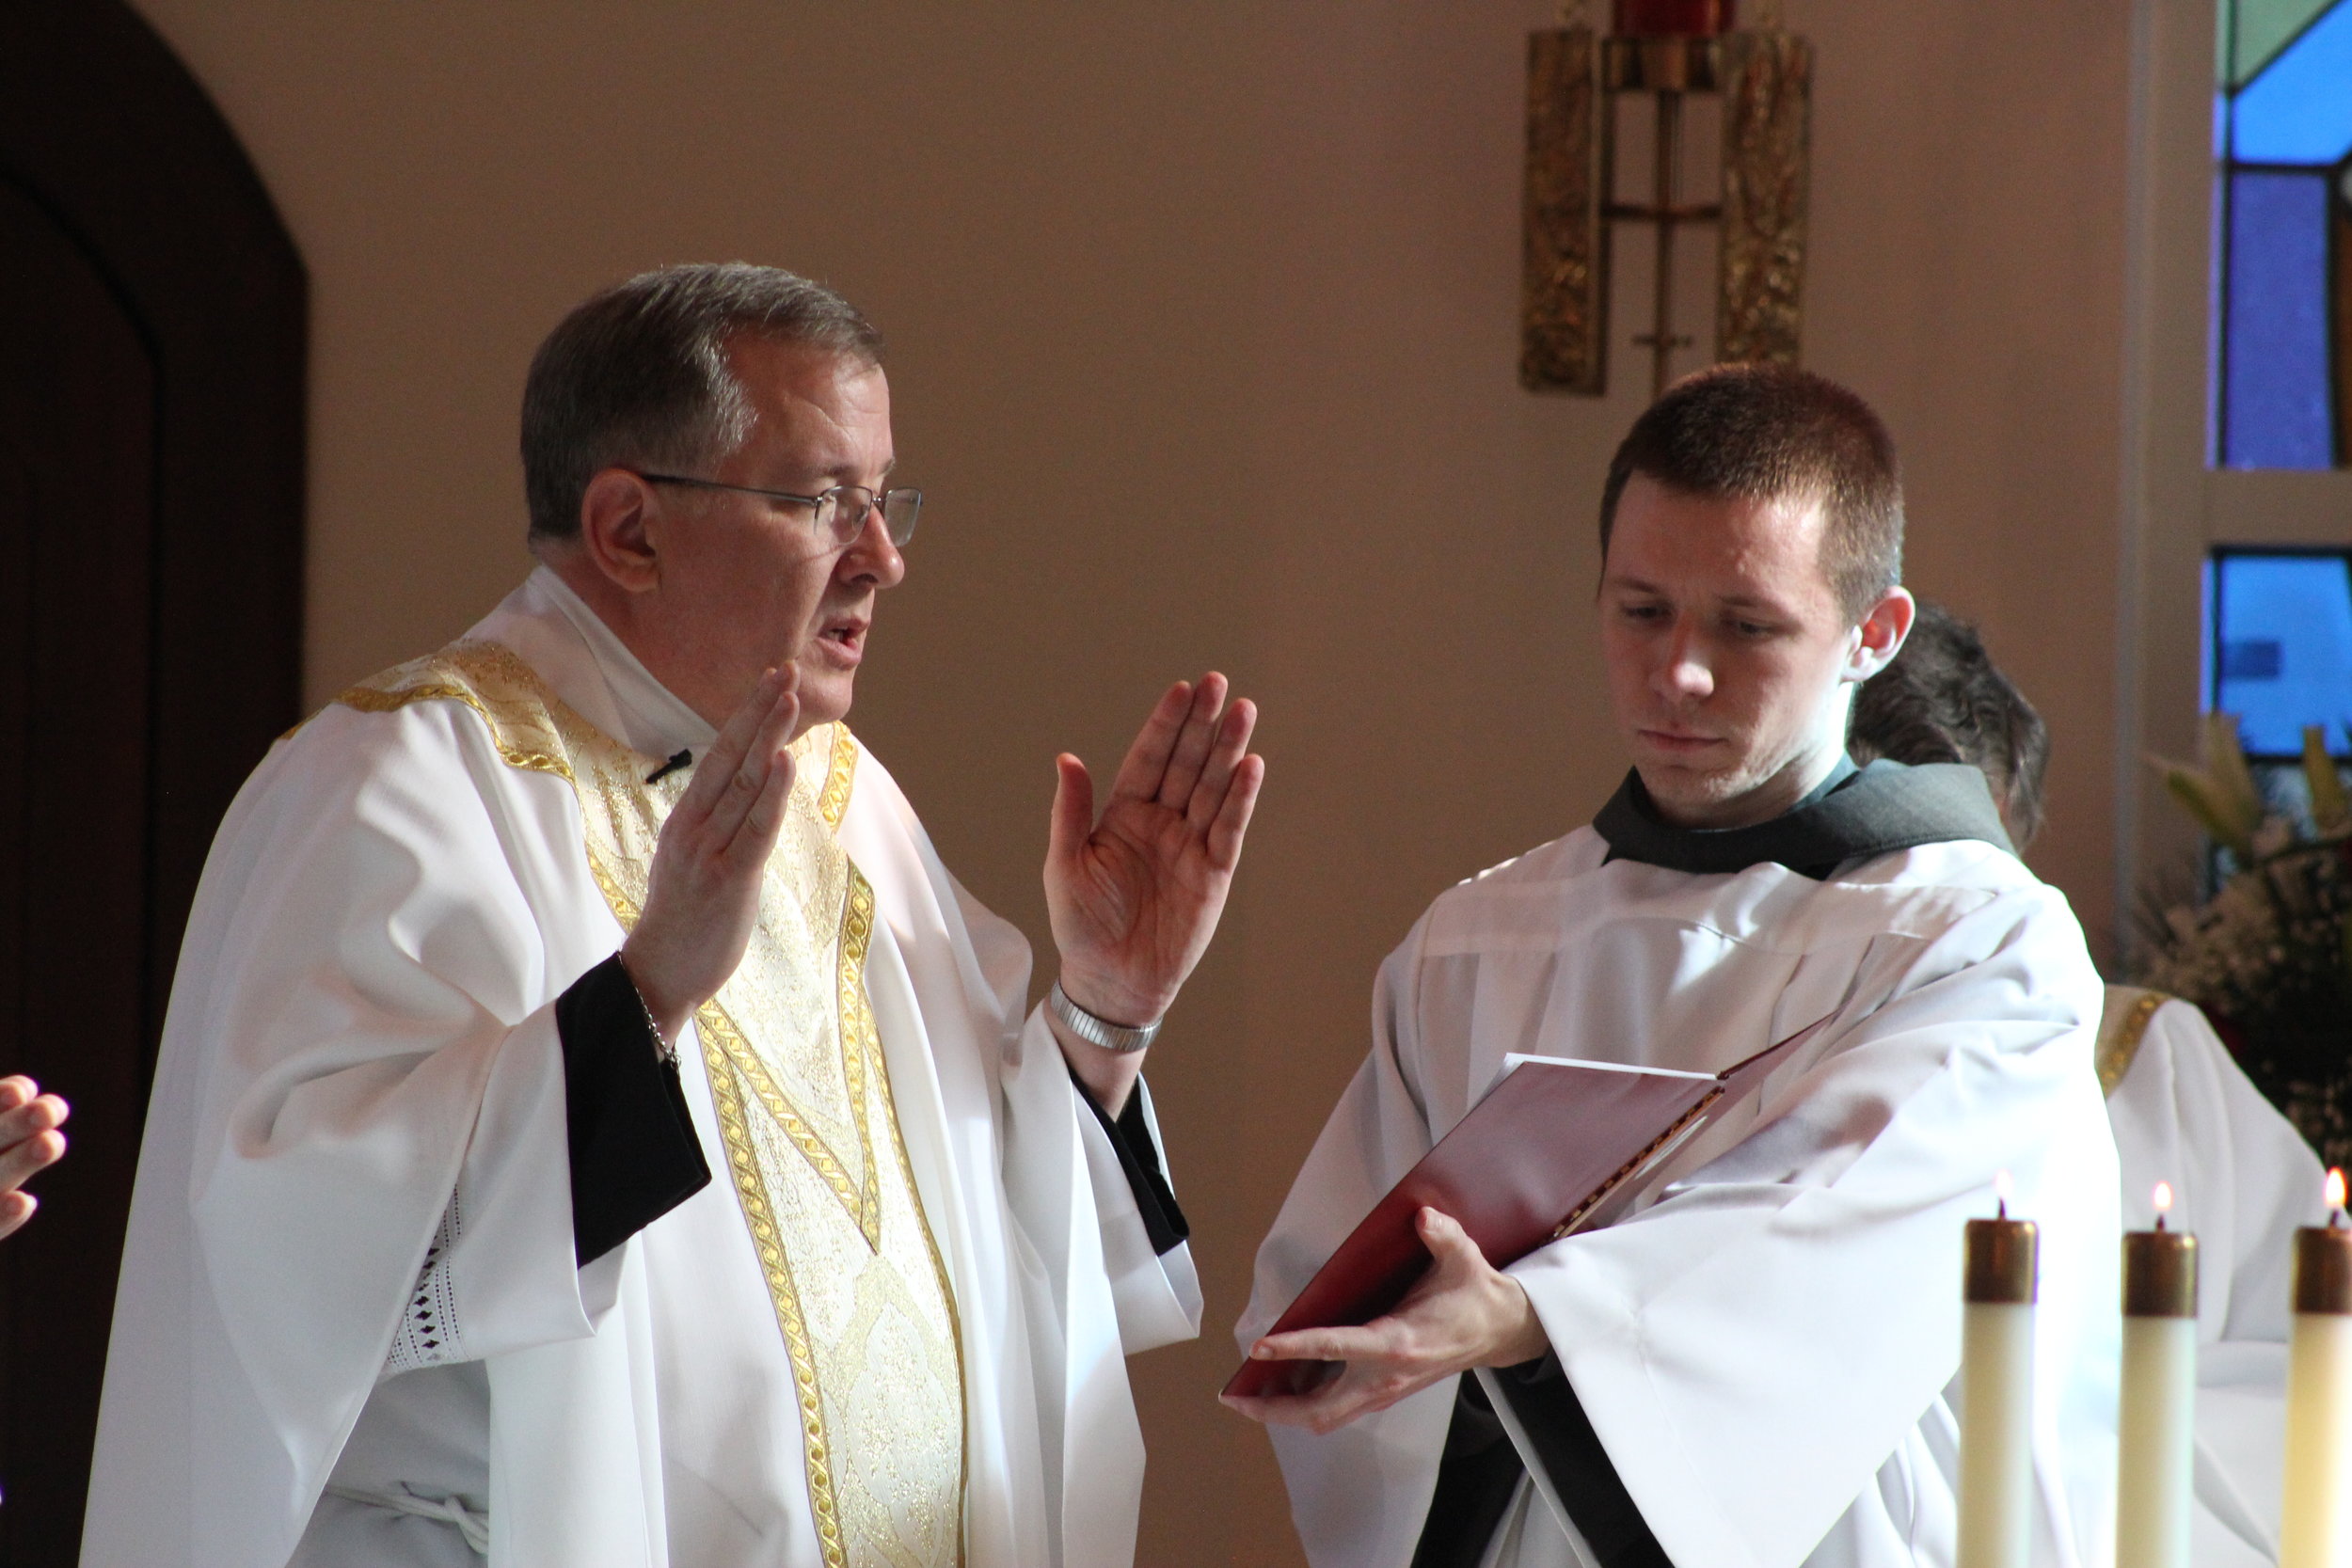  Fr. David Wilton, CPM presided, Friar Emmanuel Wenke, OFM Conv. (brother of our Sr. Frances Marie) assisted as Master of Ceremonies. 